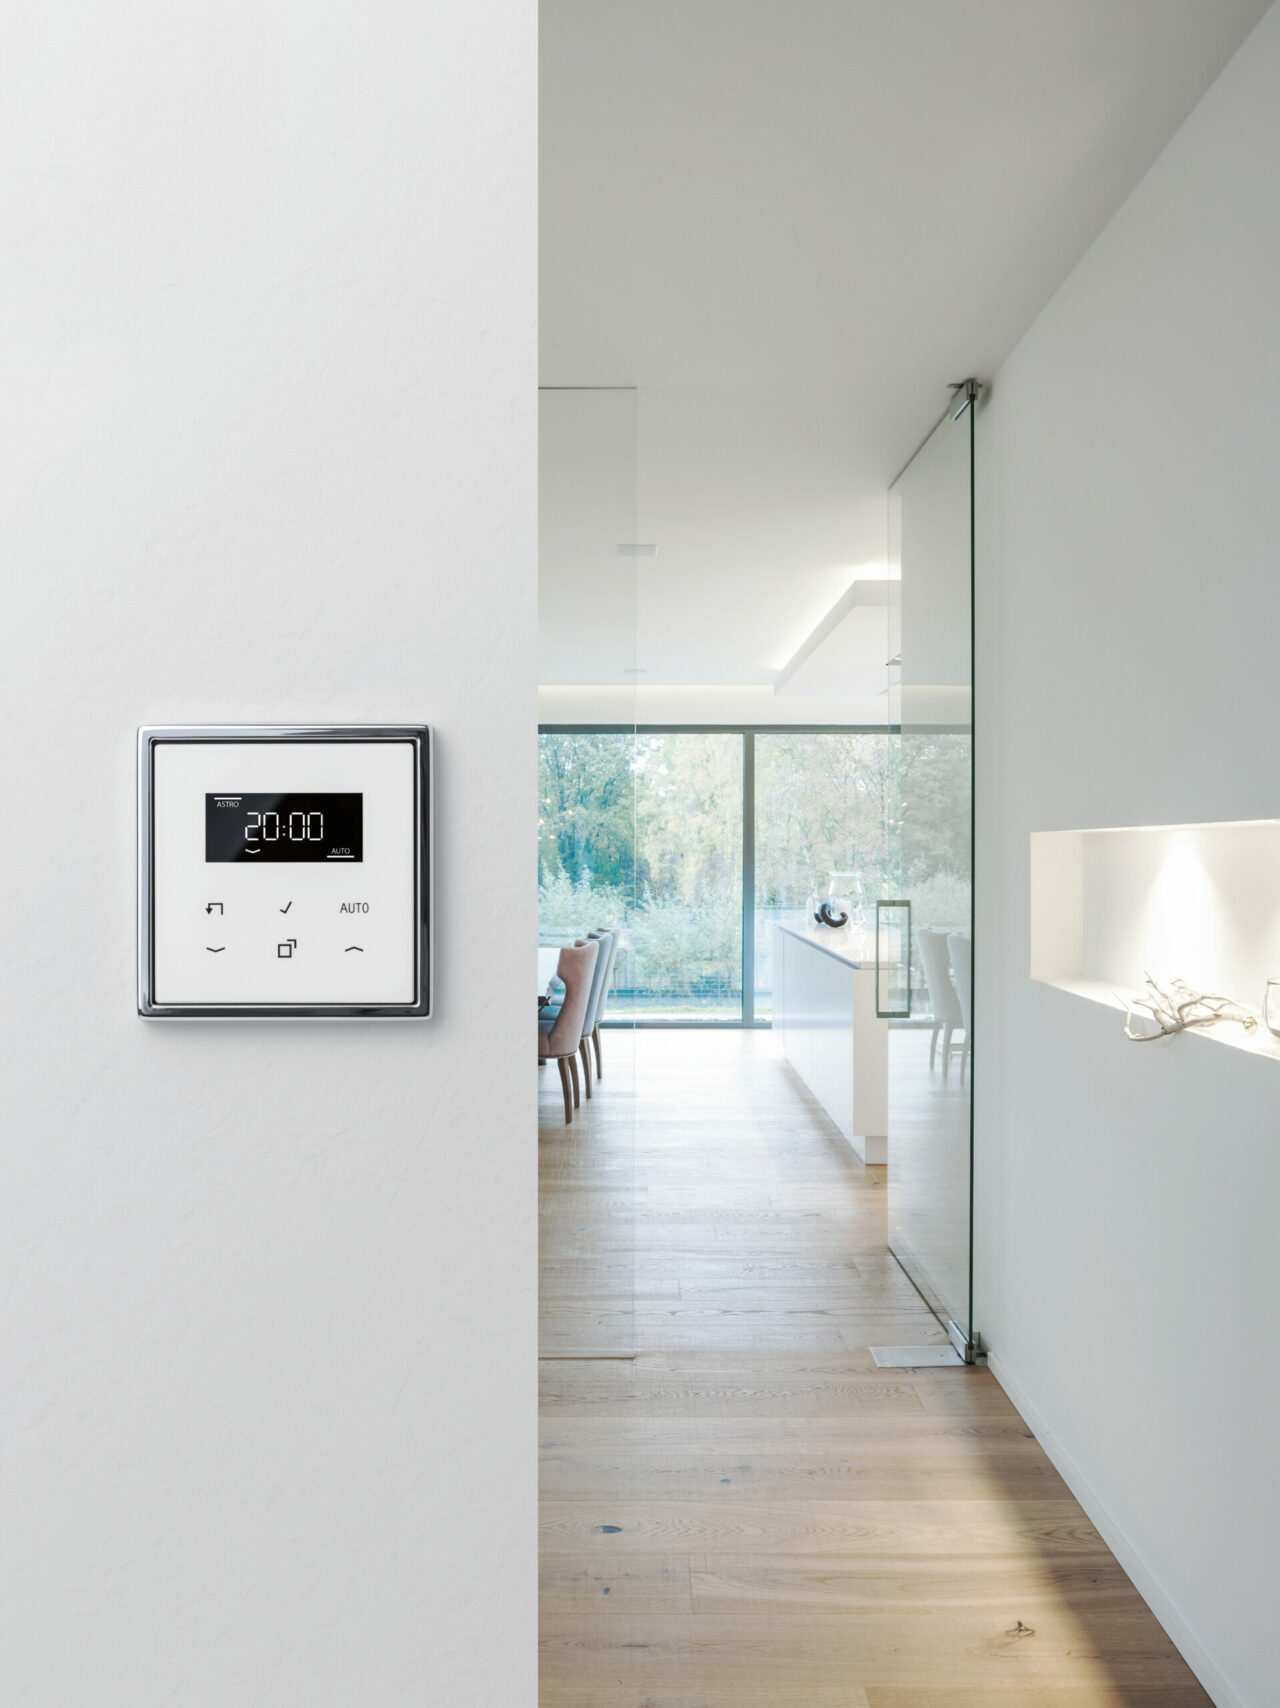 Das LB-Management die Basis im Smart Home und bietet bereits viele Komfortfunktio-nen für die Licht-, Beschattungs- und Temperatursteuerung.